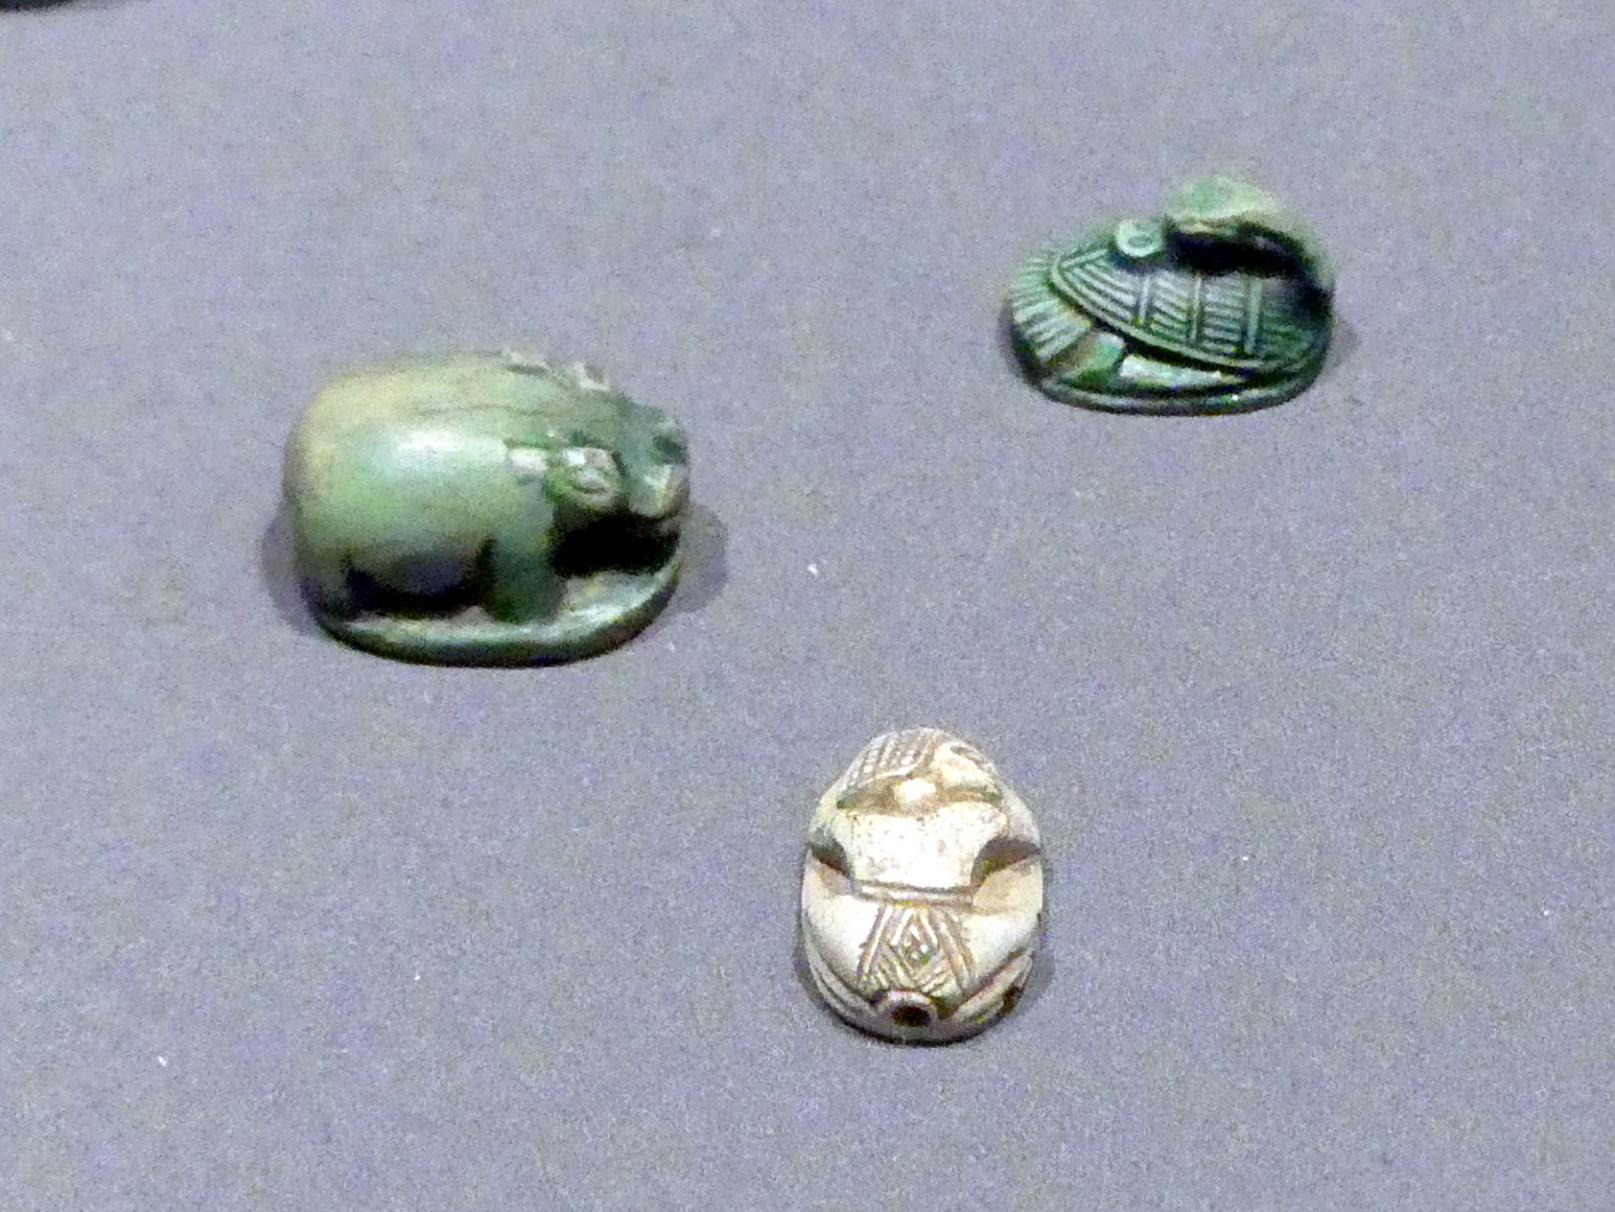 Skaraboiden als Nilpferd, Ente, Mensch, 18. Dynastie, Undatiert, 1400 - 1350 v. Chr.